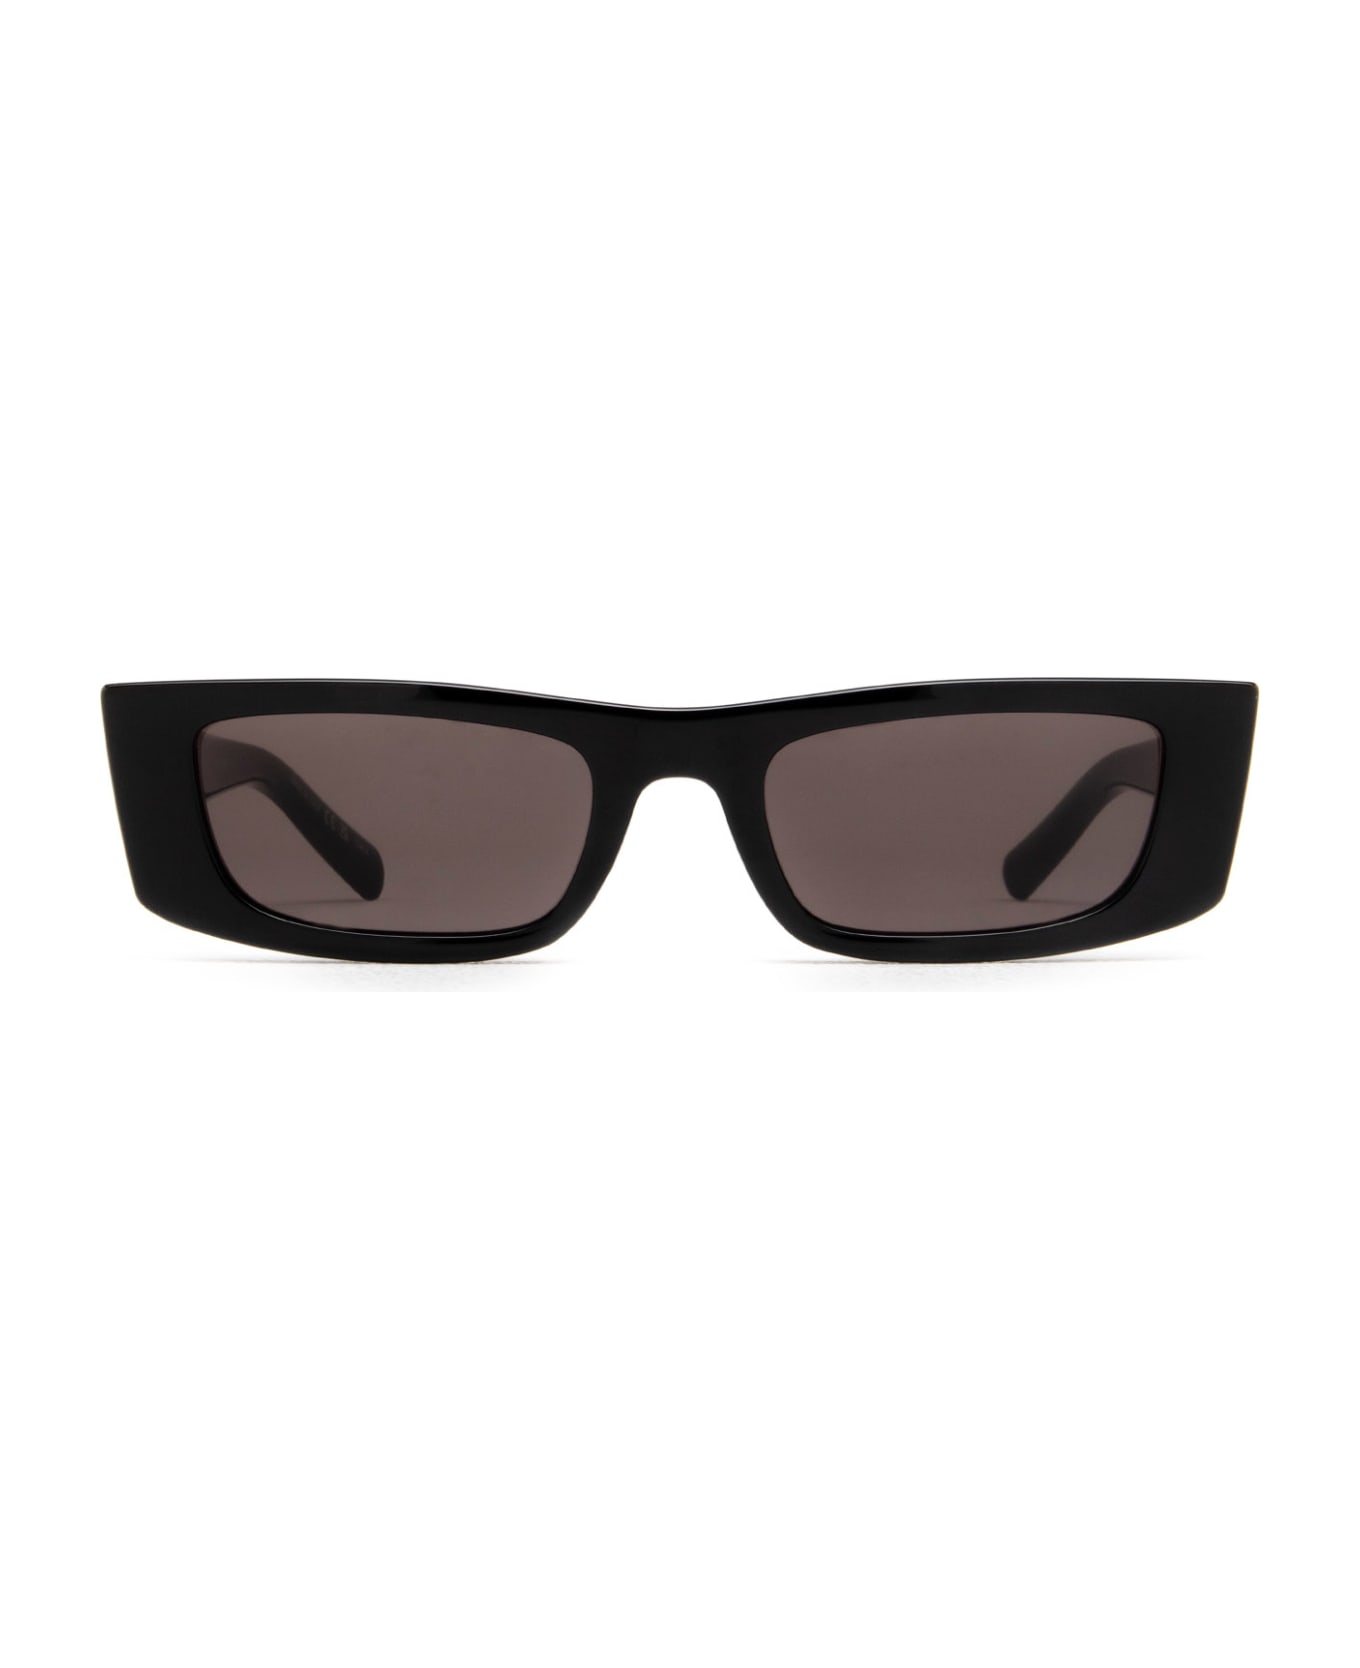 Saint Laurent Eyewear Sl 553 Black Sunglasses - Black サングラス